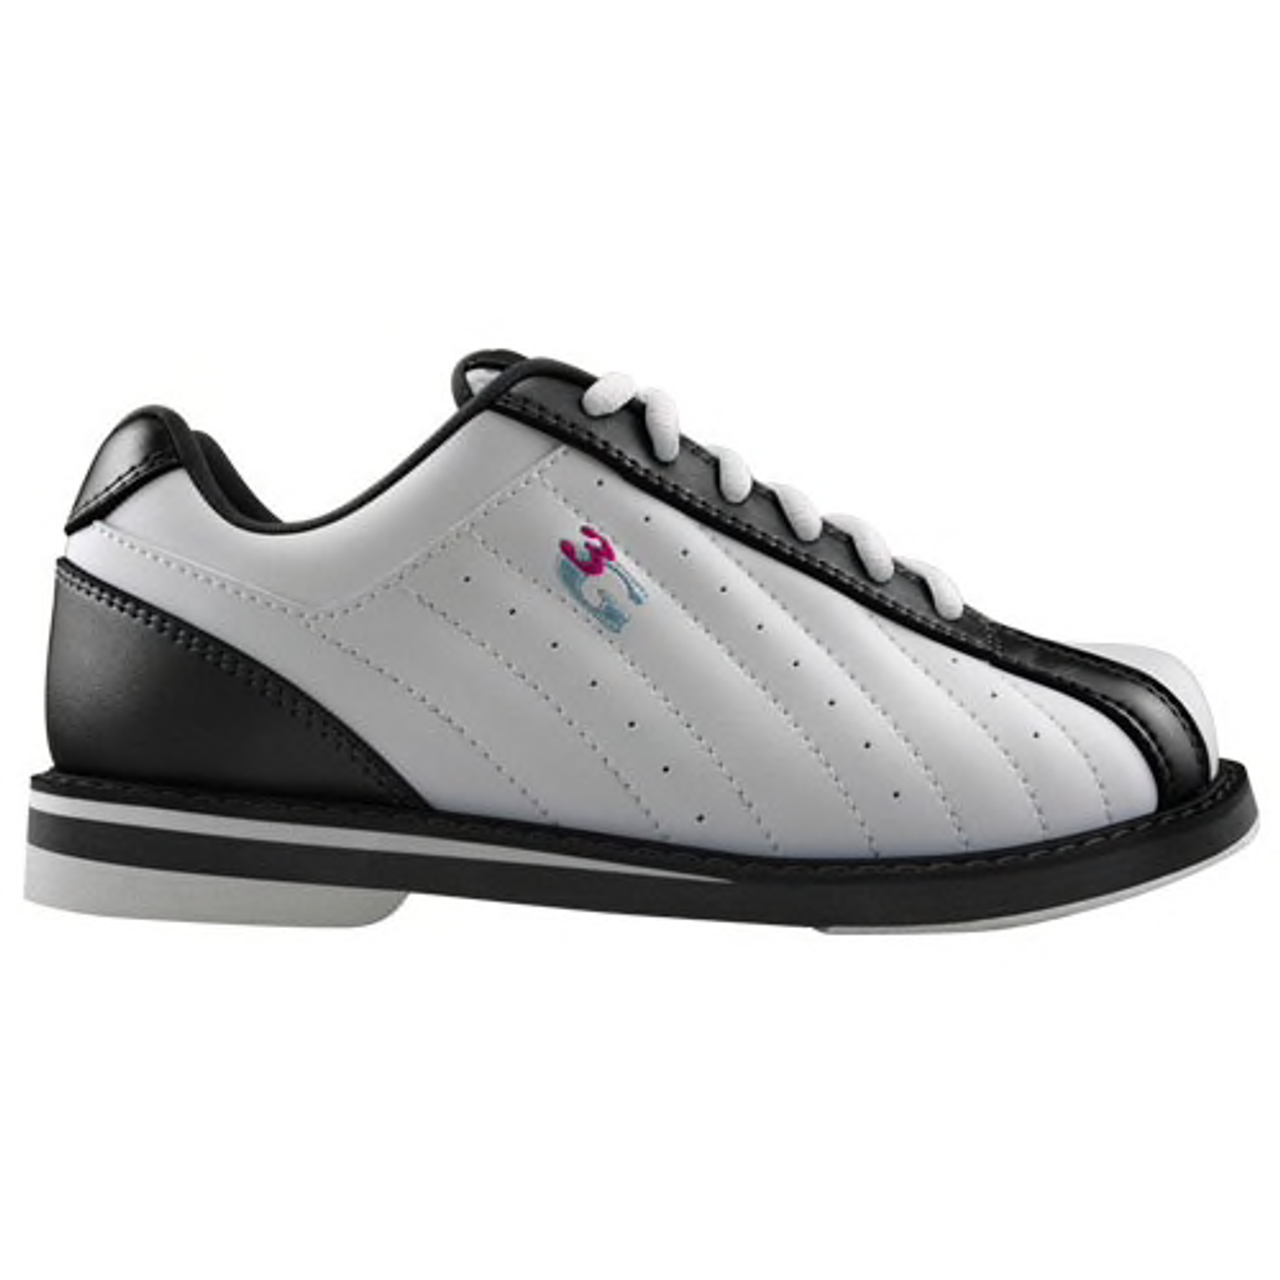 3G Kicks Men's Bowling Shoes White/Black